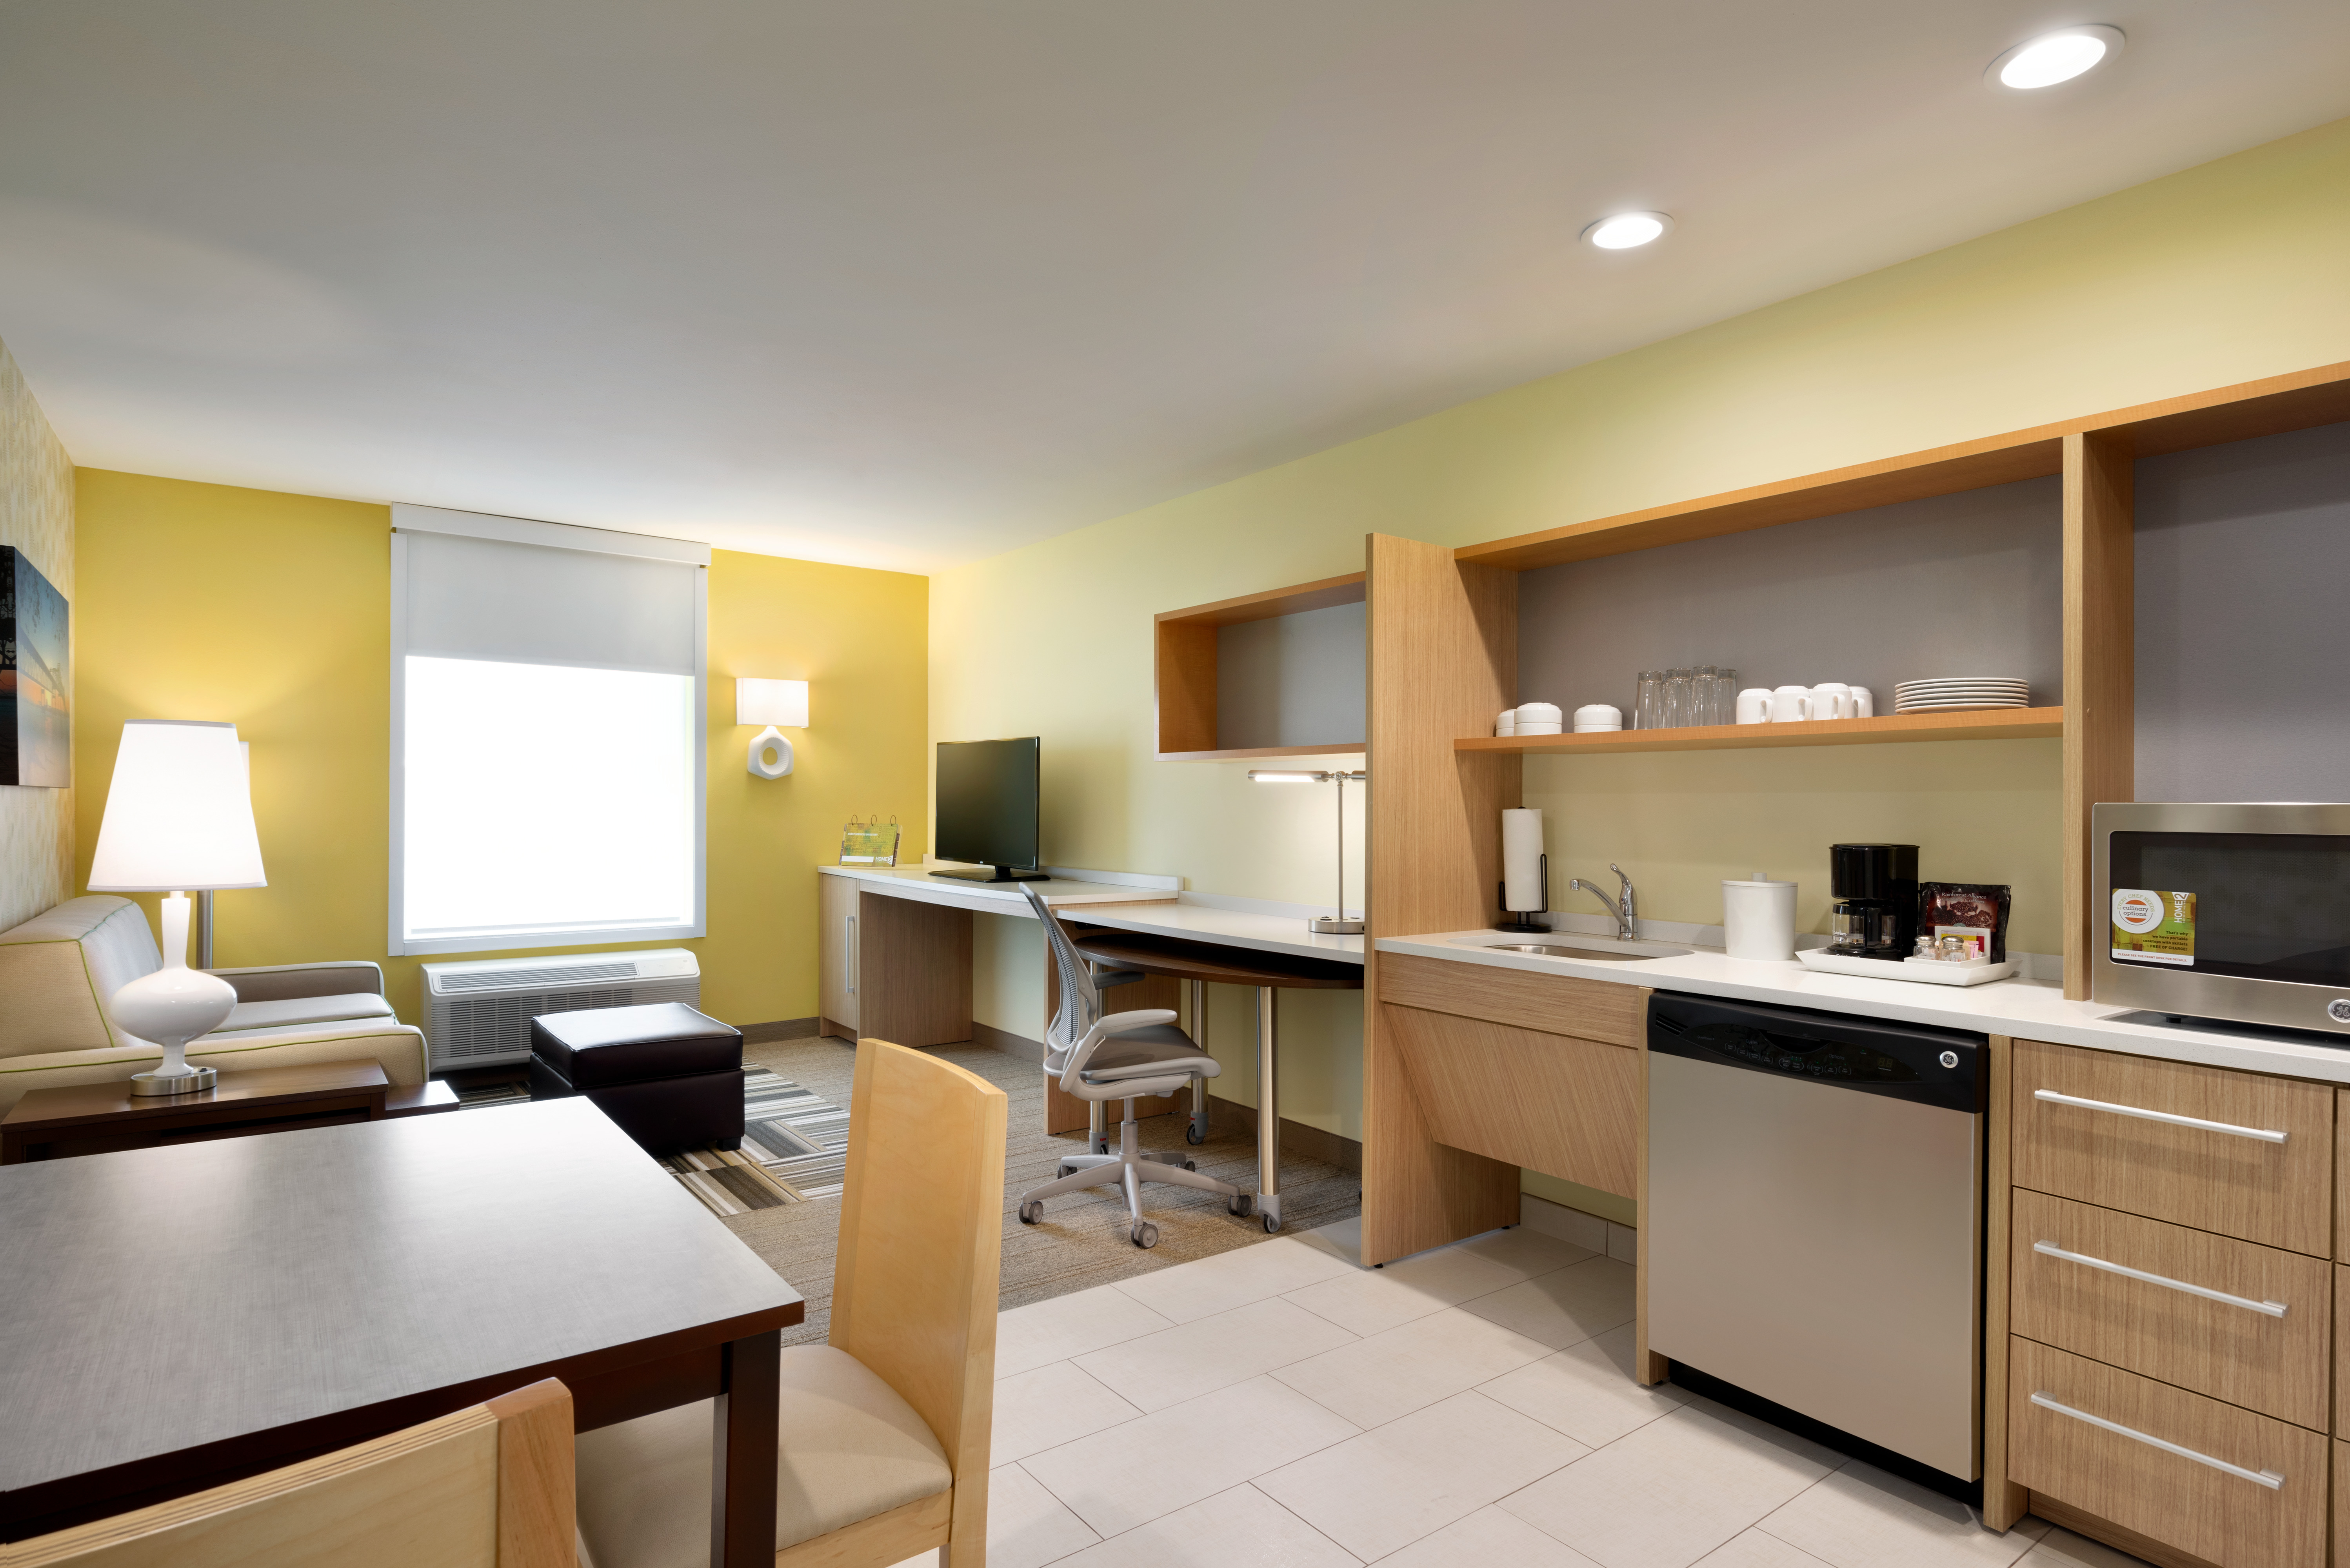 Home2 Suites by Hilton Baton Rouge Hotel, LA - Accessible Queen Bedroom Suite, Kitchen